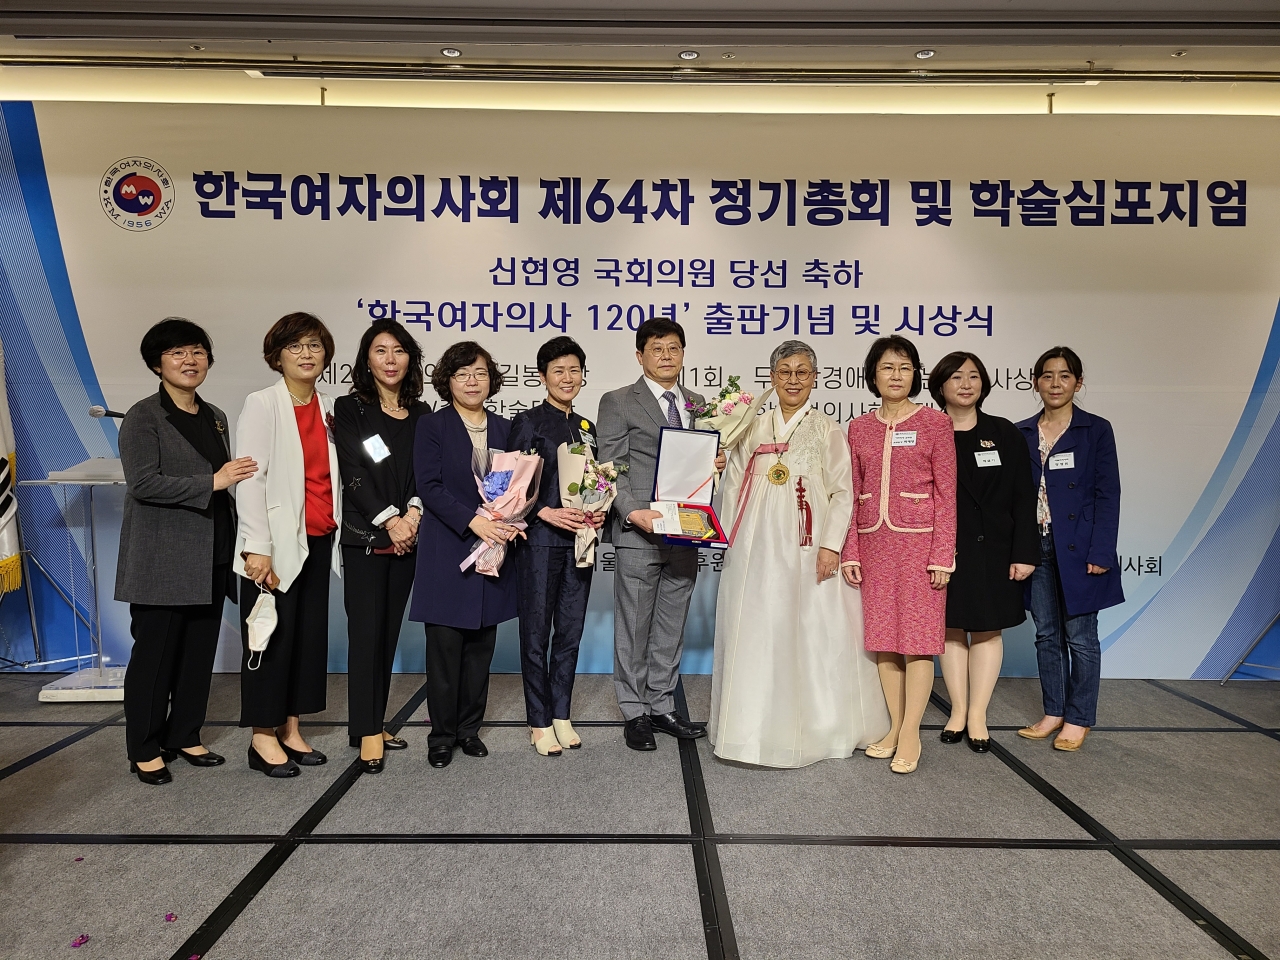 서울시의사회 의료봉사단이 여의사회가 주는 '여의대상 길봉사상'을 수상했다. 